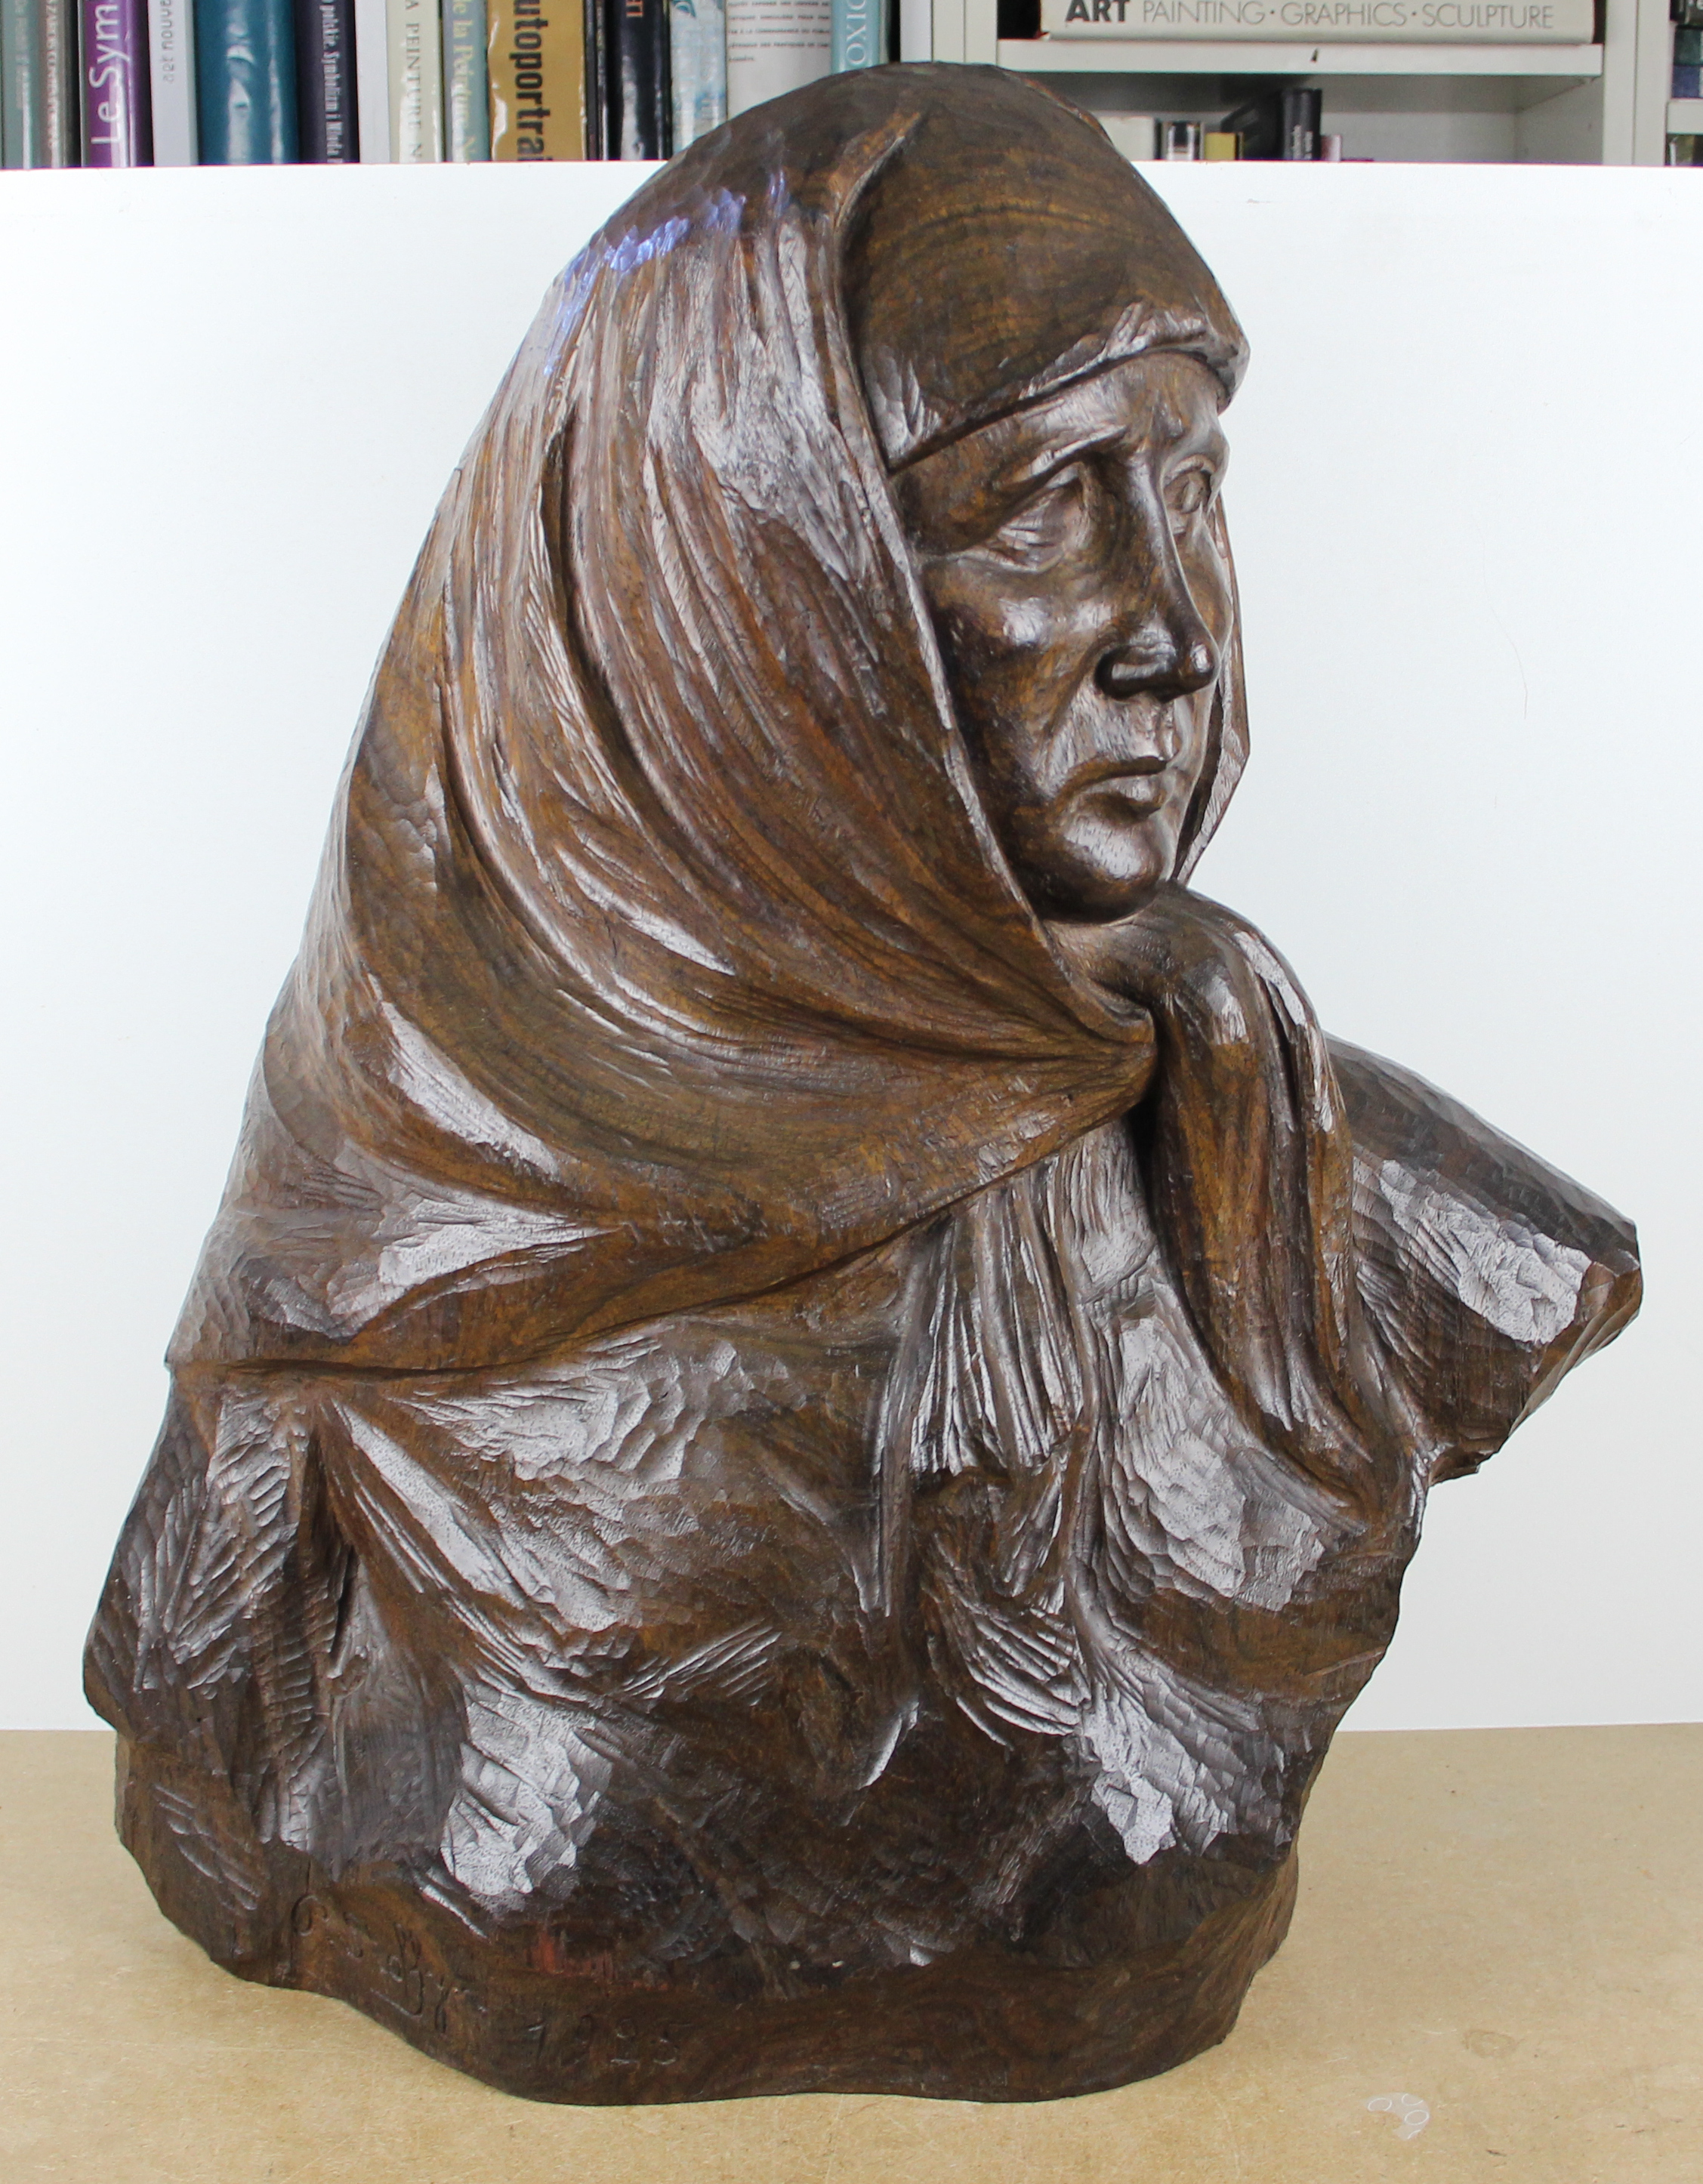 sculpture La dame au foulard  Stoffyn paul portrait   bois 1ère moitié 20e siècle